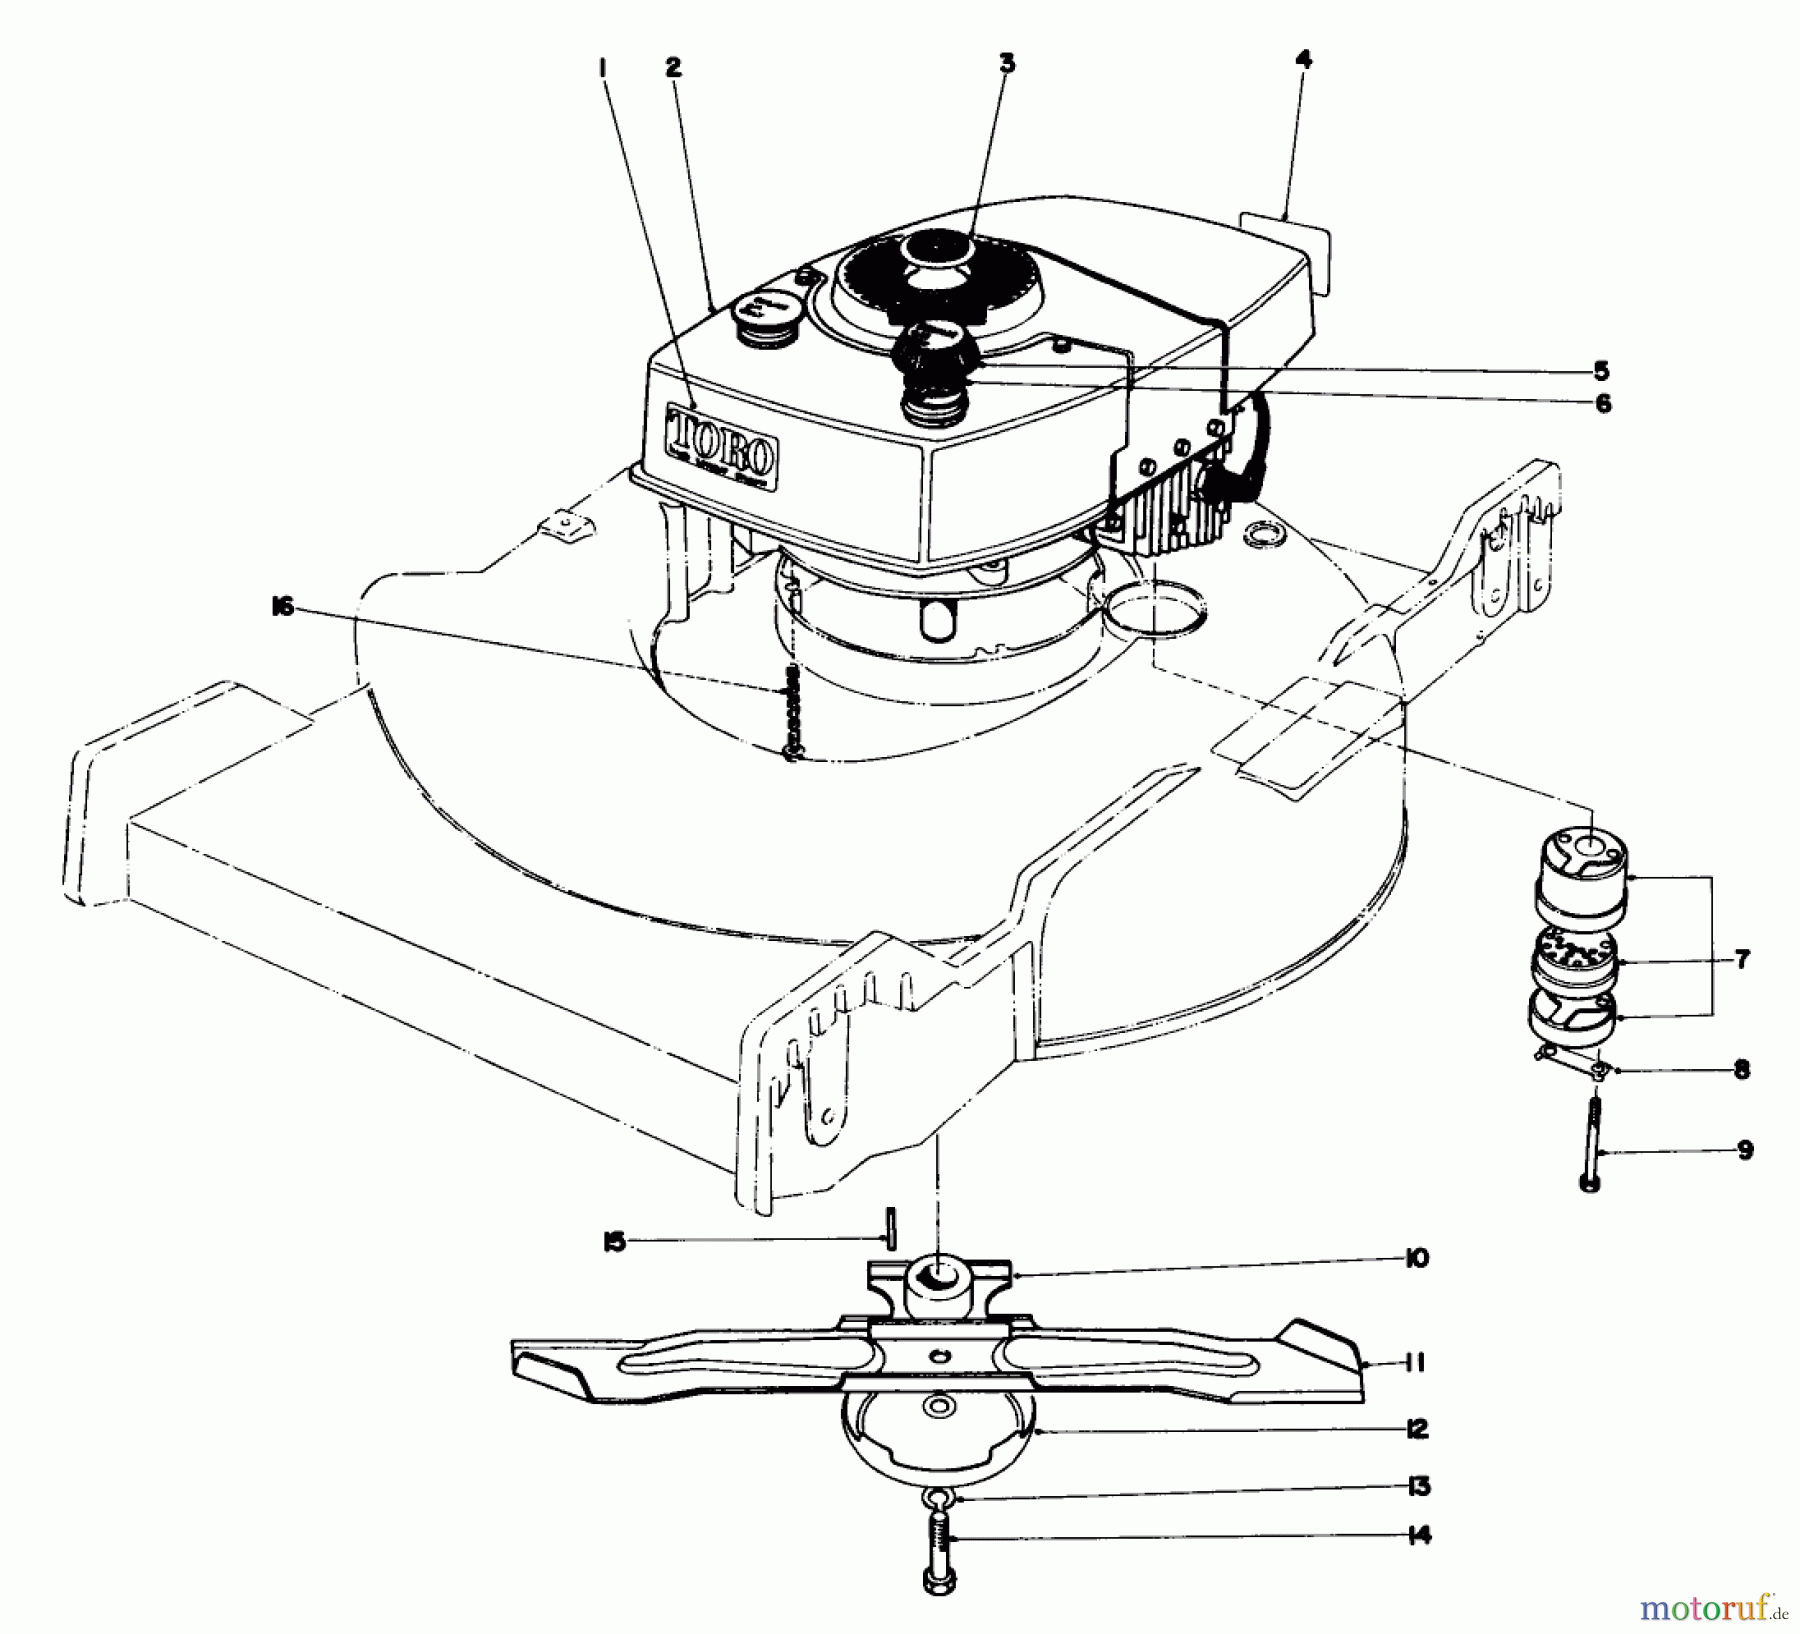  Toro Neu Mowers, Walk-Behind Seite 1 20550 - Toro Lawnmower, 1974 (4000001-4999999) ENGINE ASSEMBLY MODEL NO. 20440